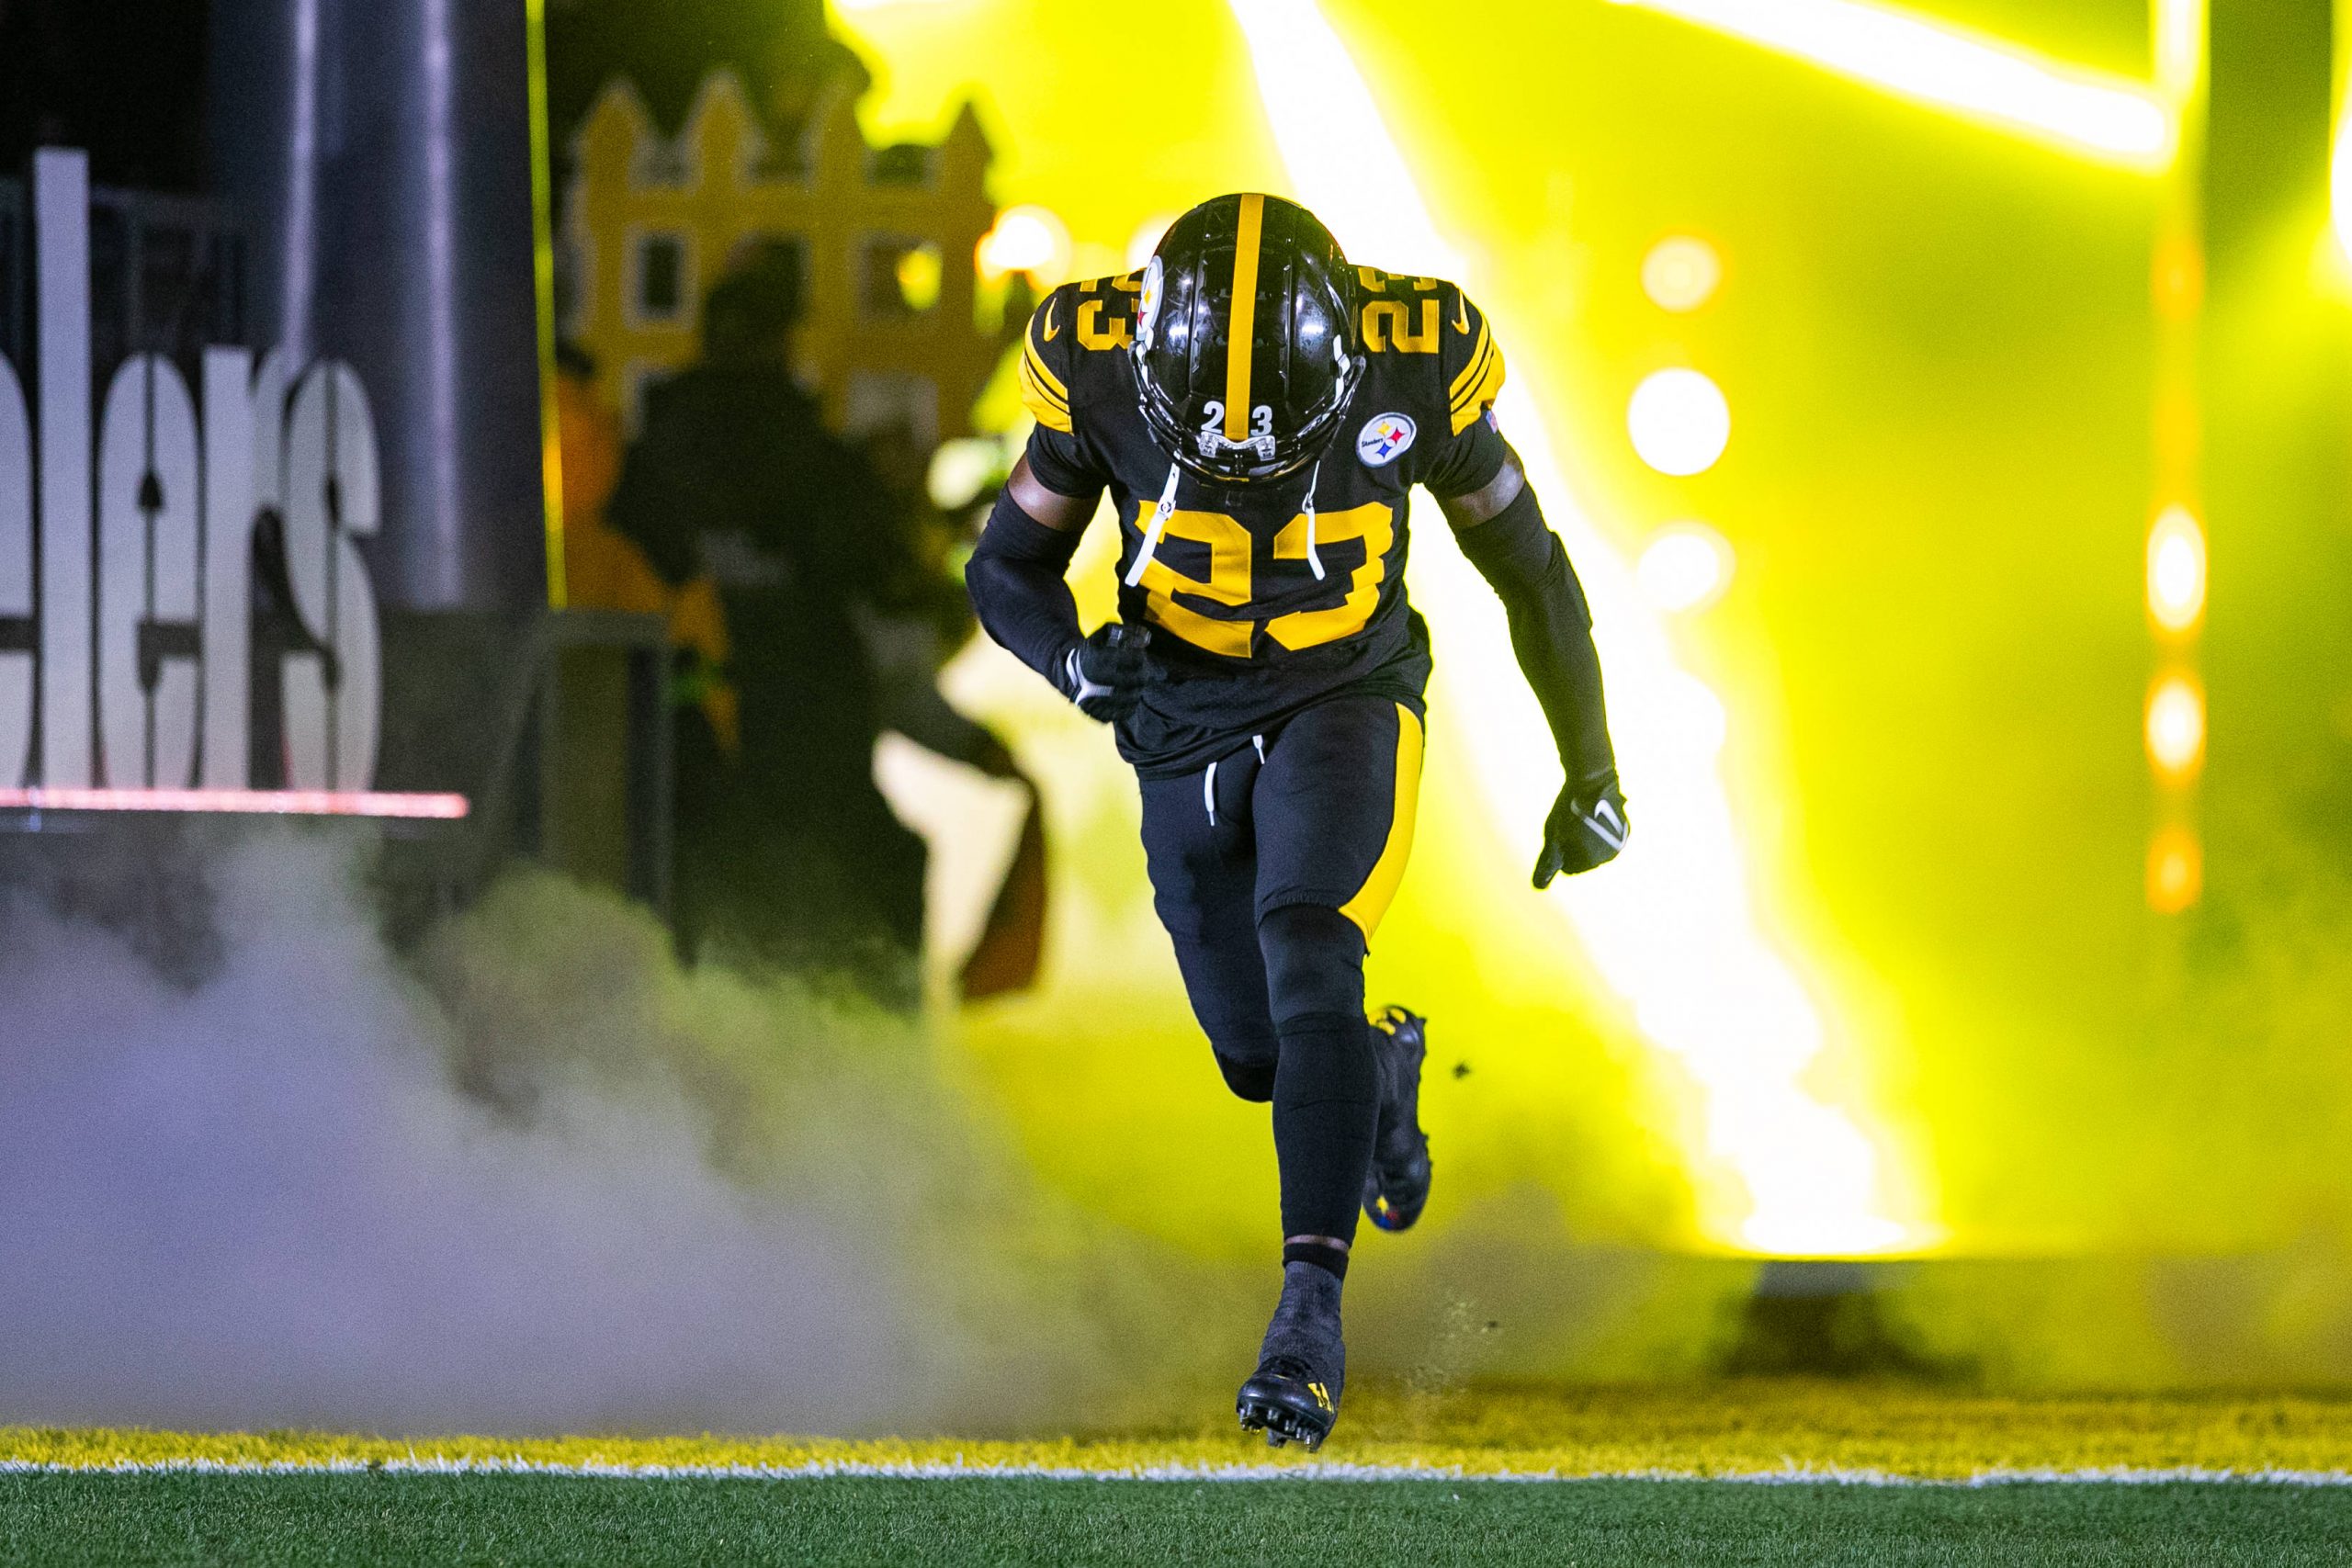 FootballR - NFL - Ein Steelers-Footballspieler, Damontae Kazee, läuft in einem NFL-Spiel auf dem Spielfeld.